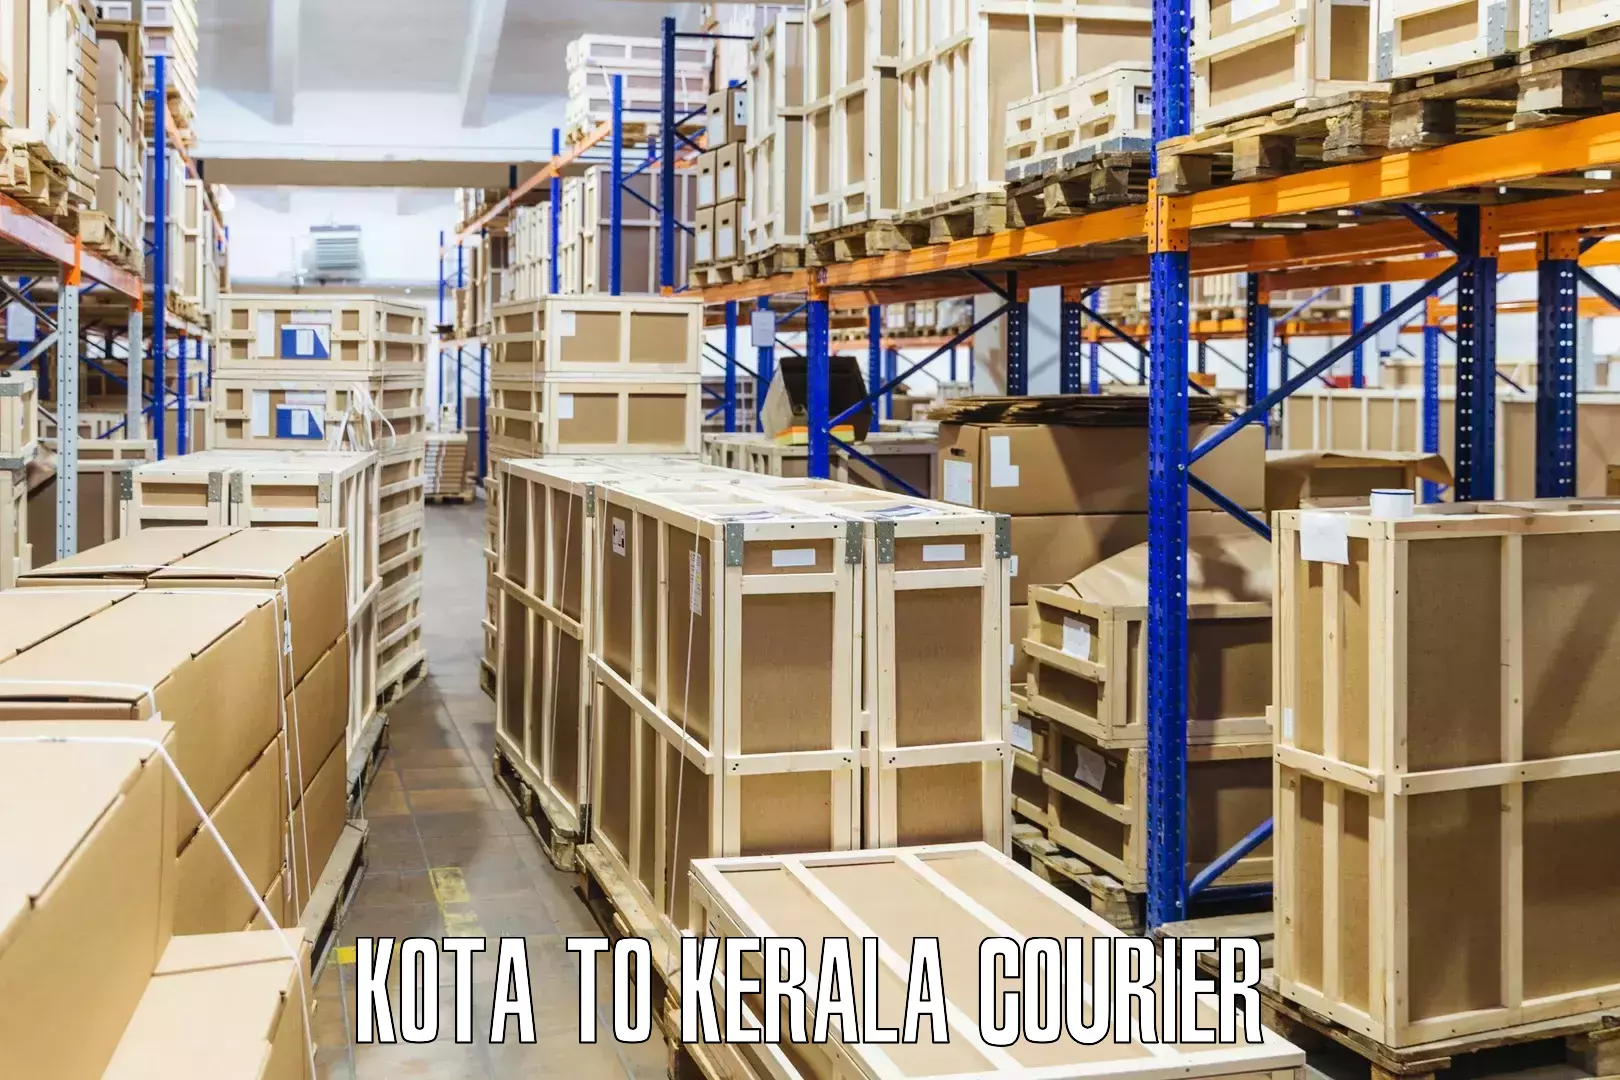 Seamless shipping experience Kota to Panthalam